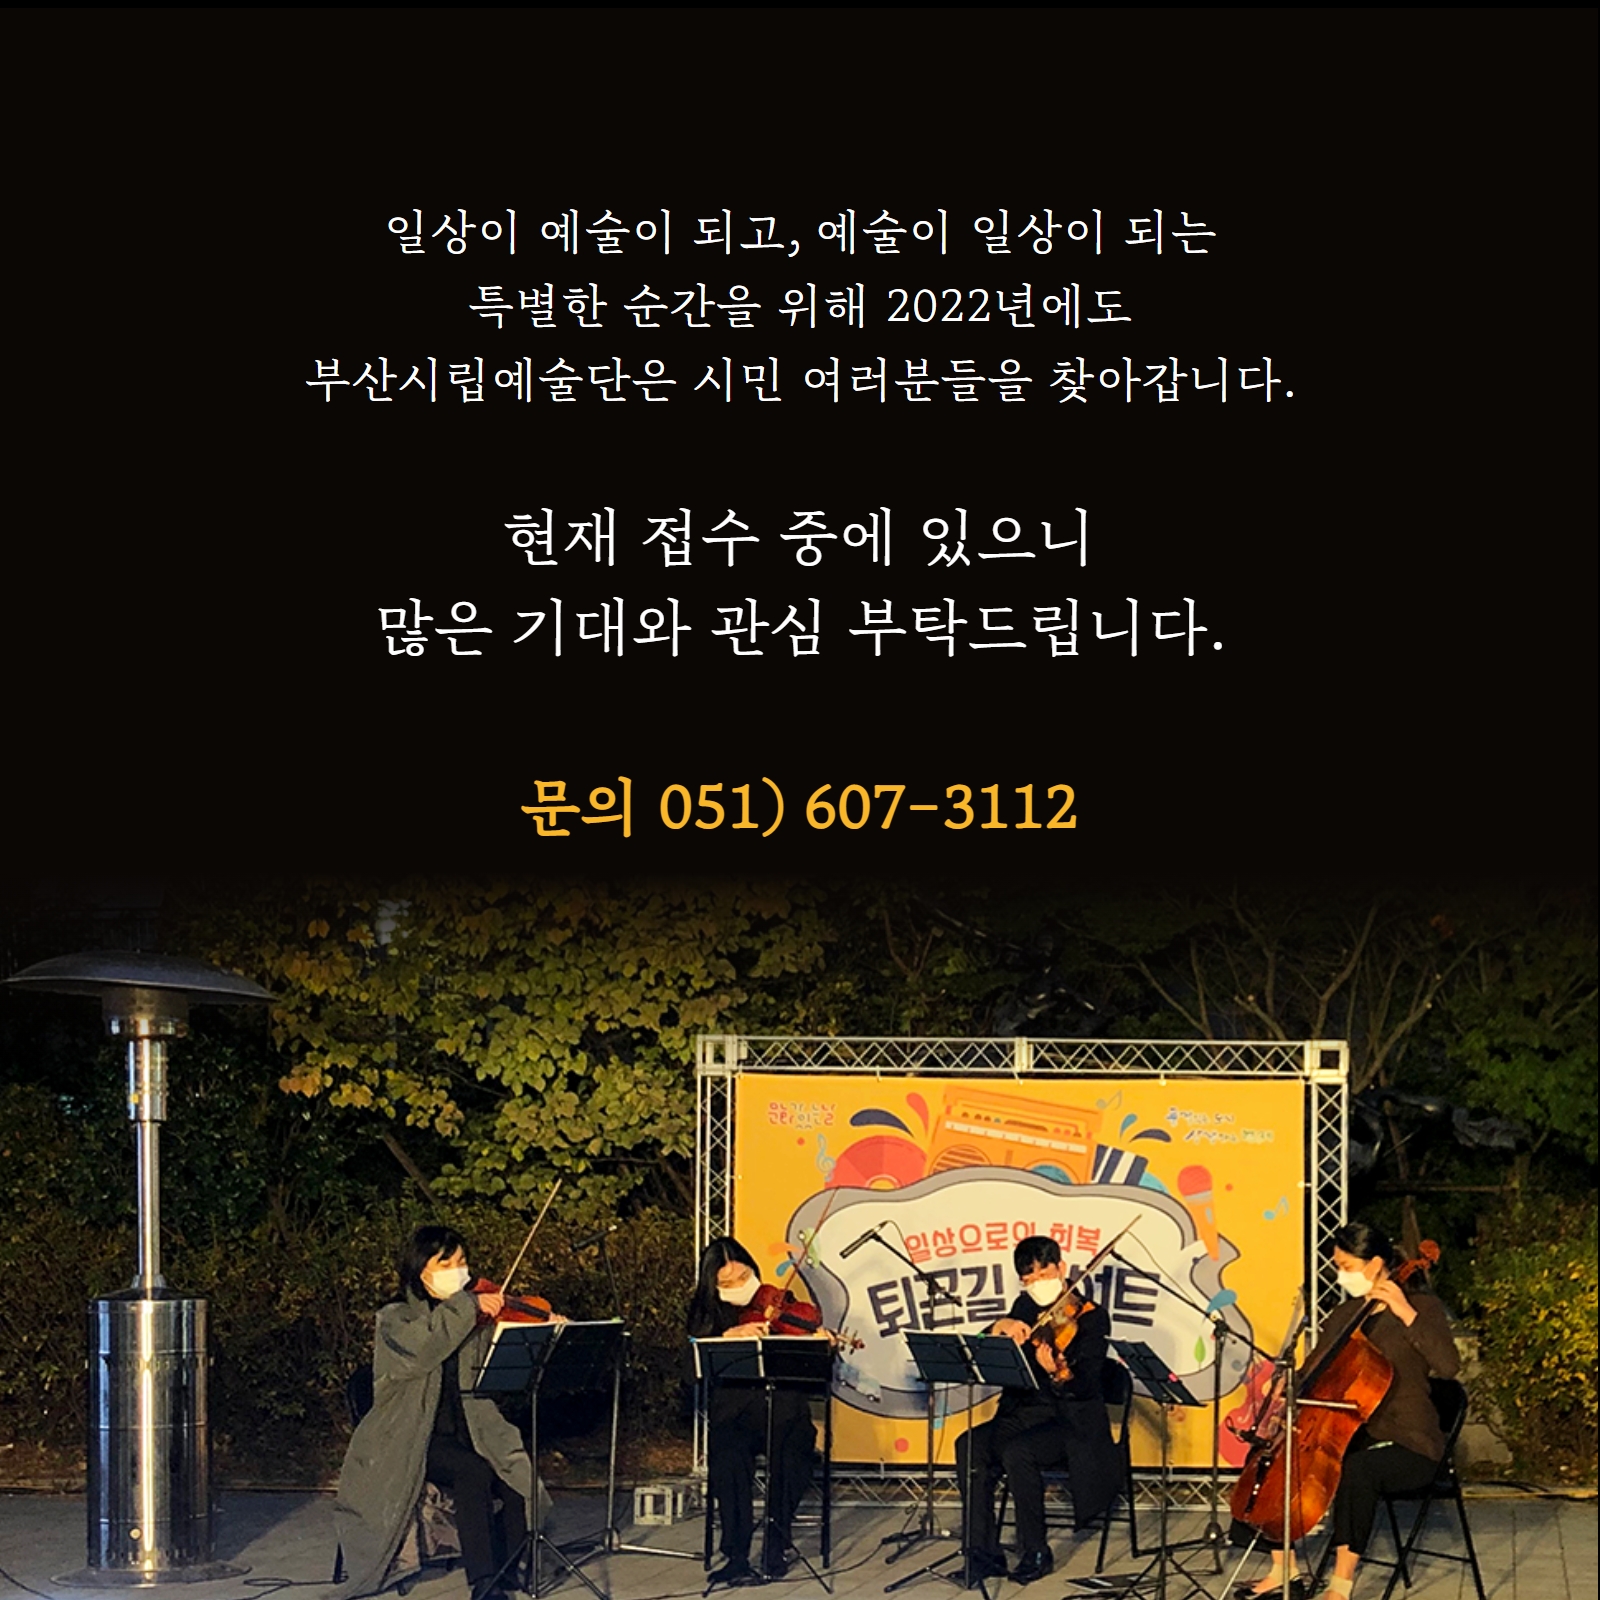 [공지] 2022년 부산시립예술단 <찾아가는 예술단> 희망 기관 모집